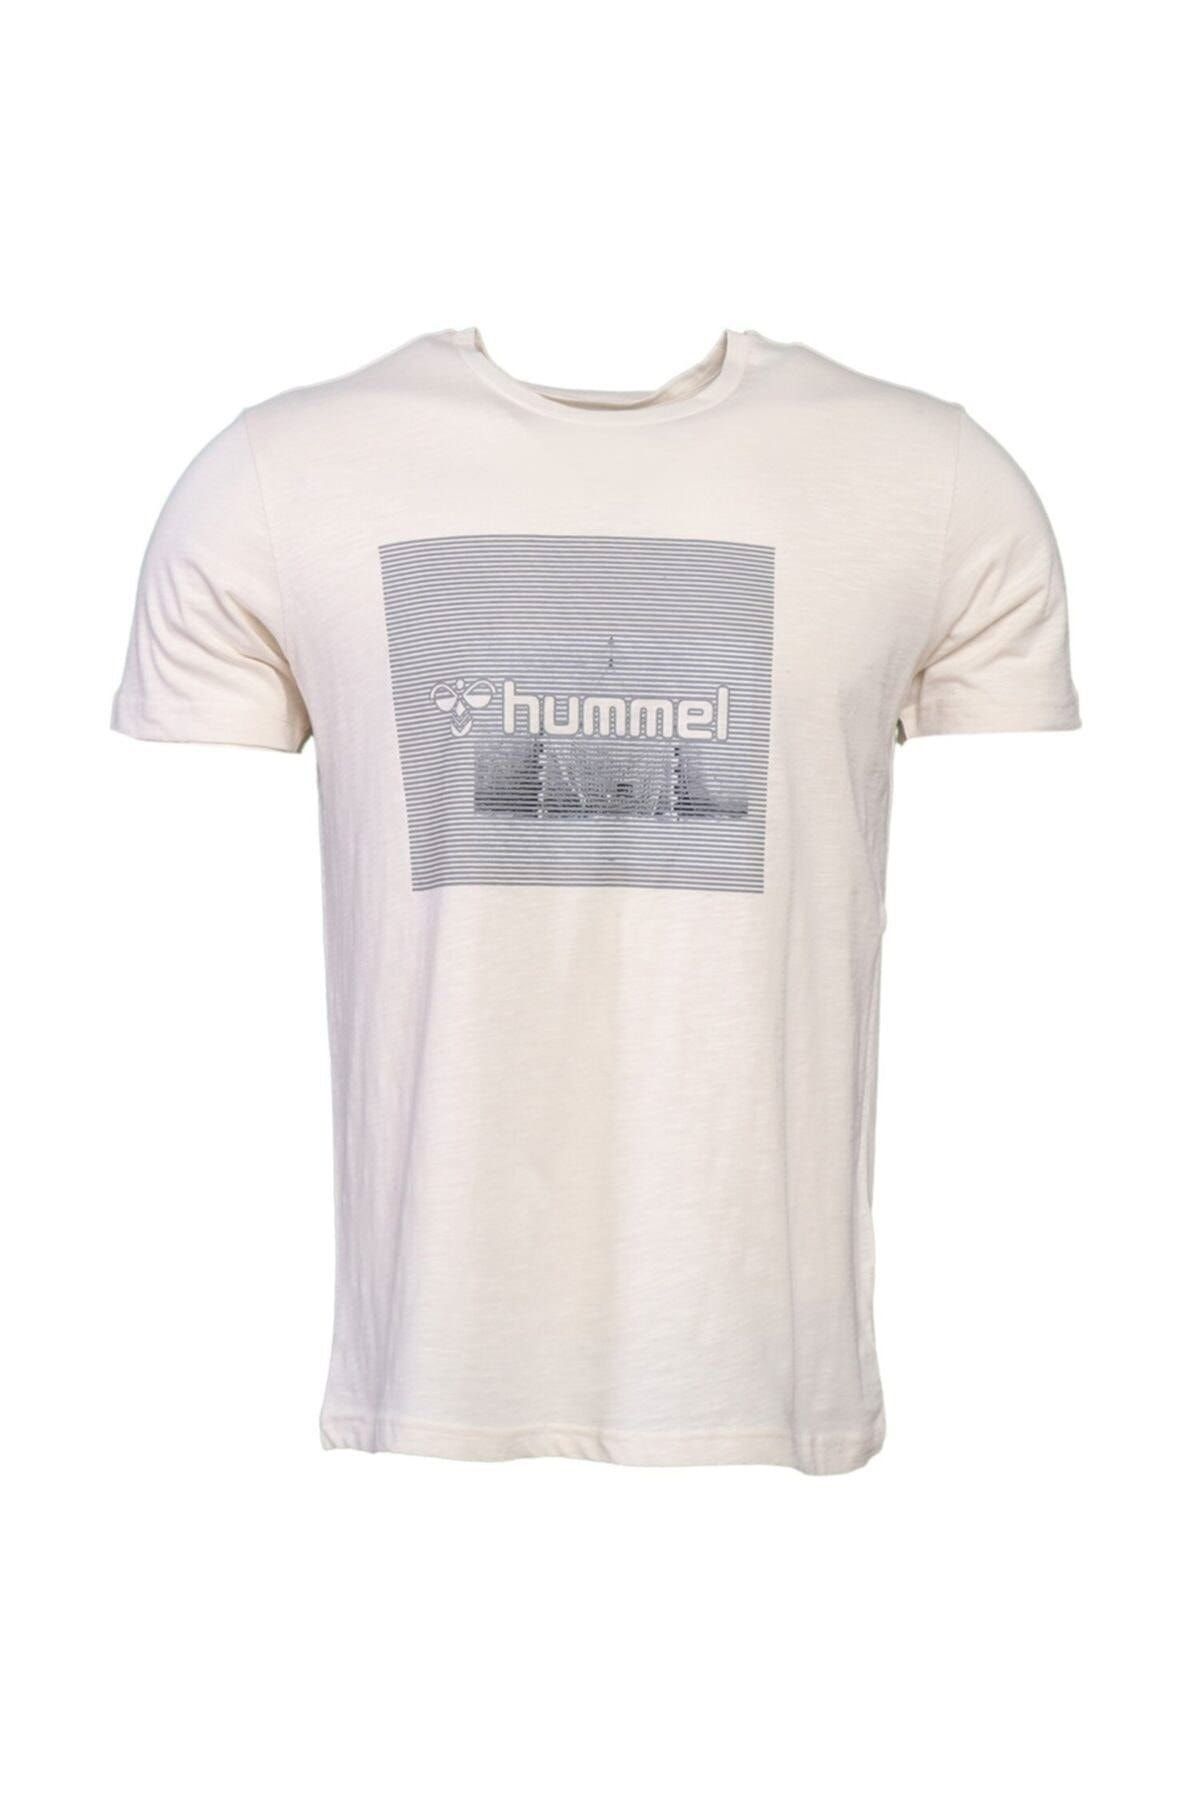 hummel HMLMISQUET T-SHIRT S/S TE Ekru Erkek T-Shirt 101086312